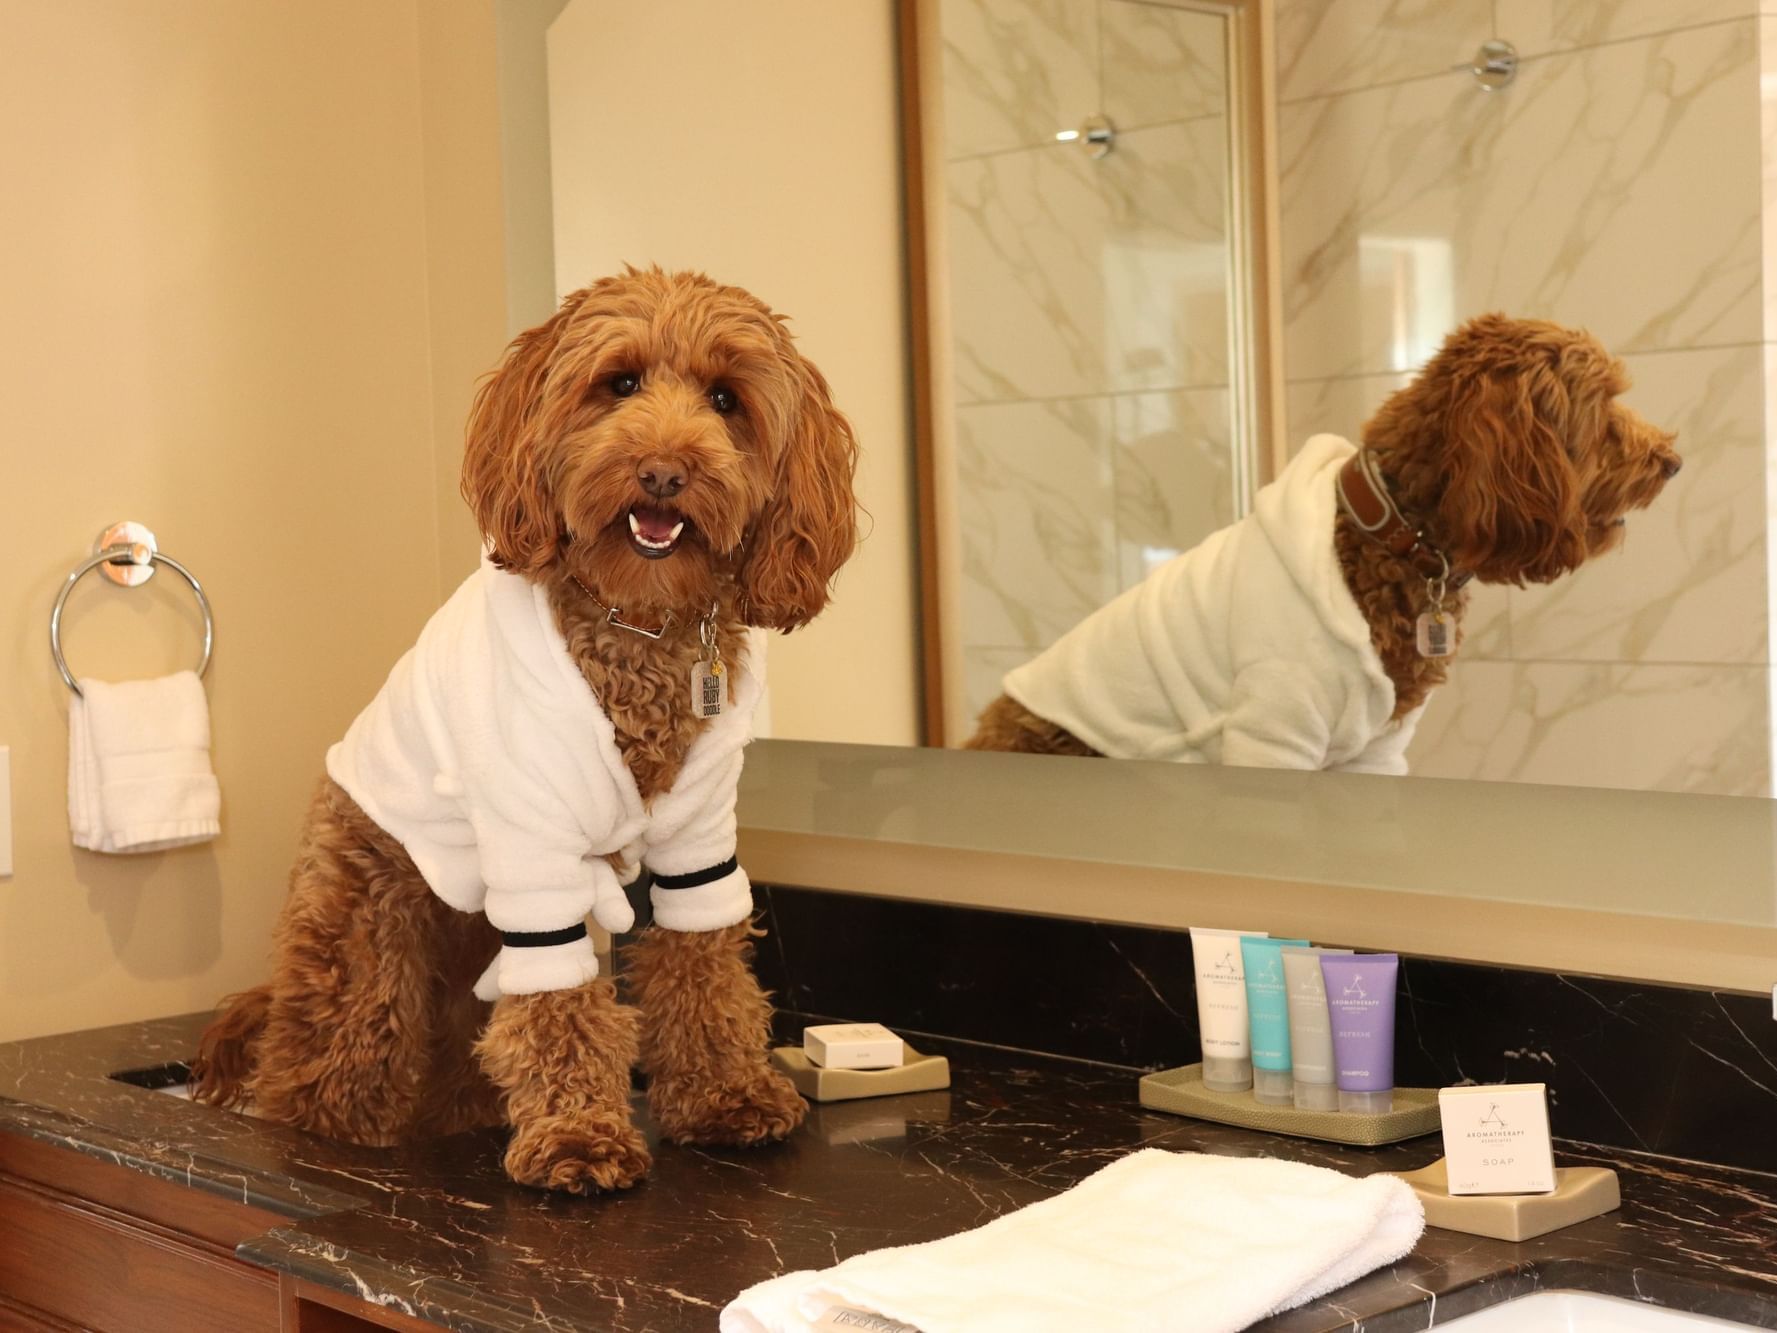 Medium sized dog wearing robe while sitting on bathroom vanity